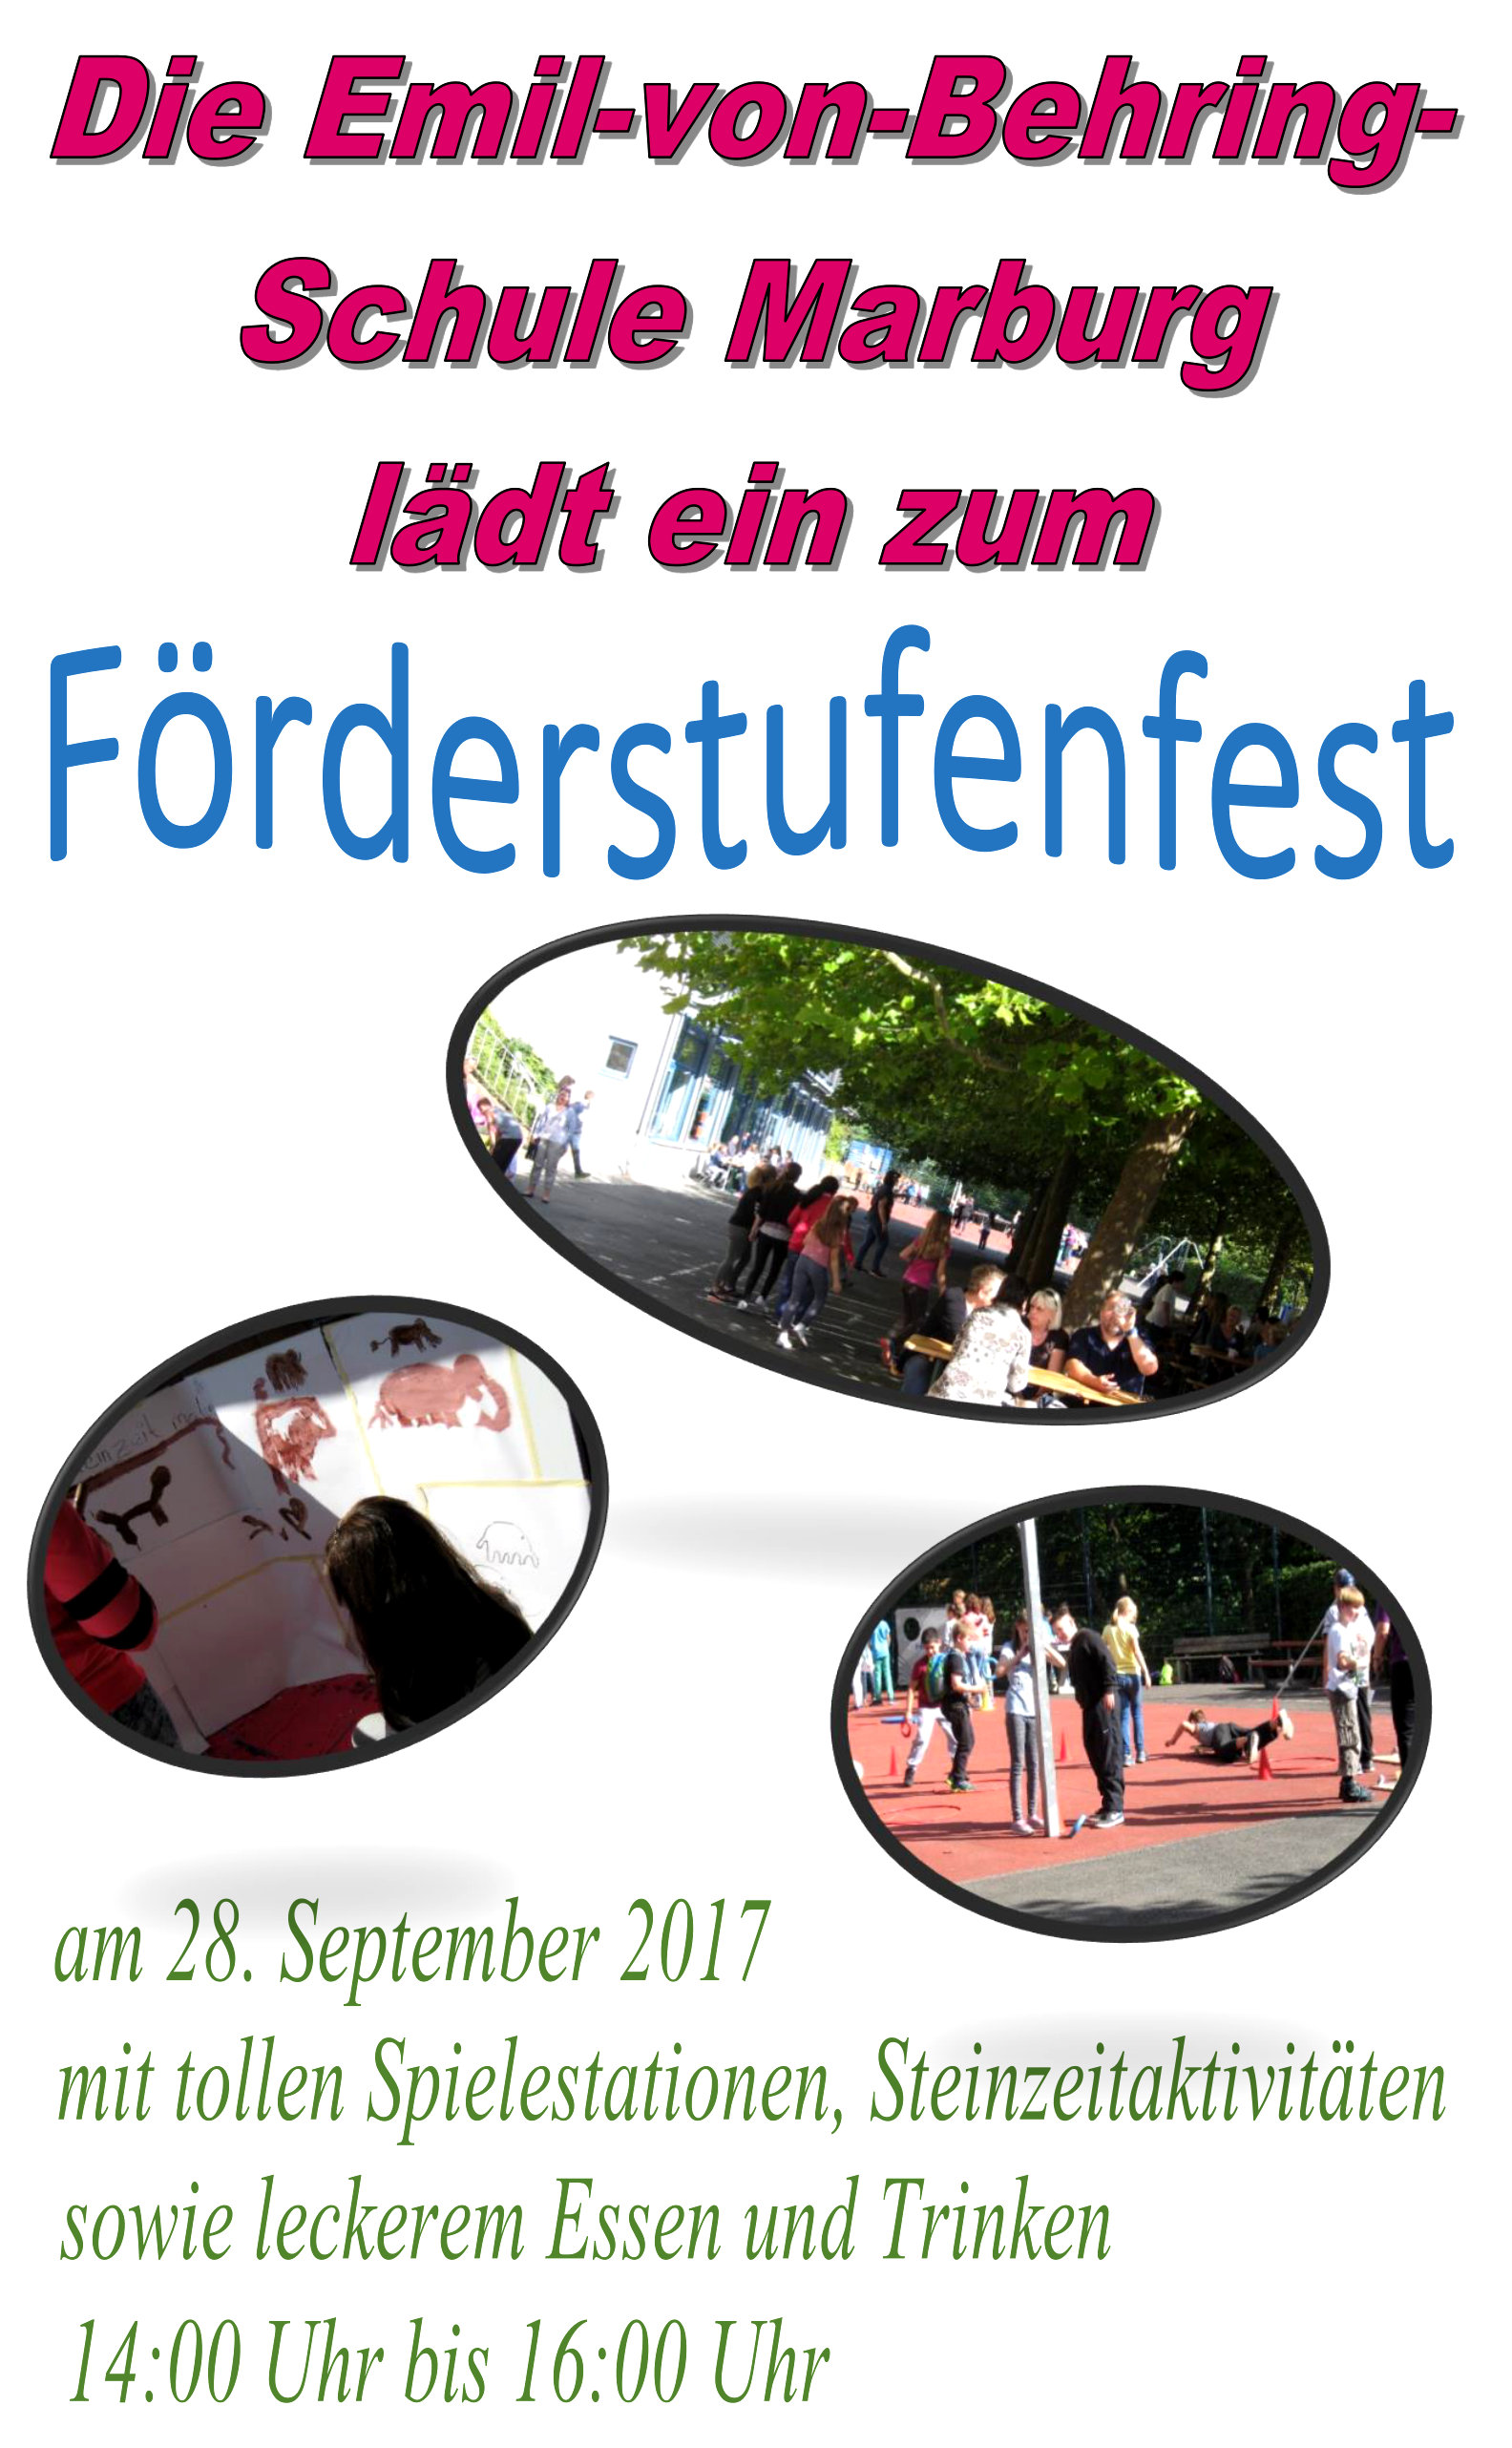 Einladung Foerderstufenfest 2017